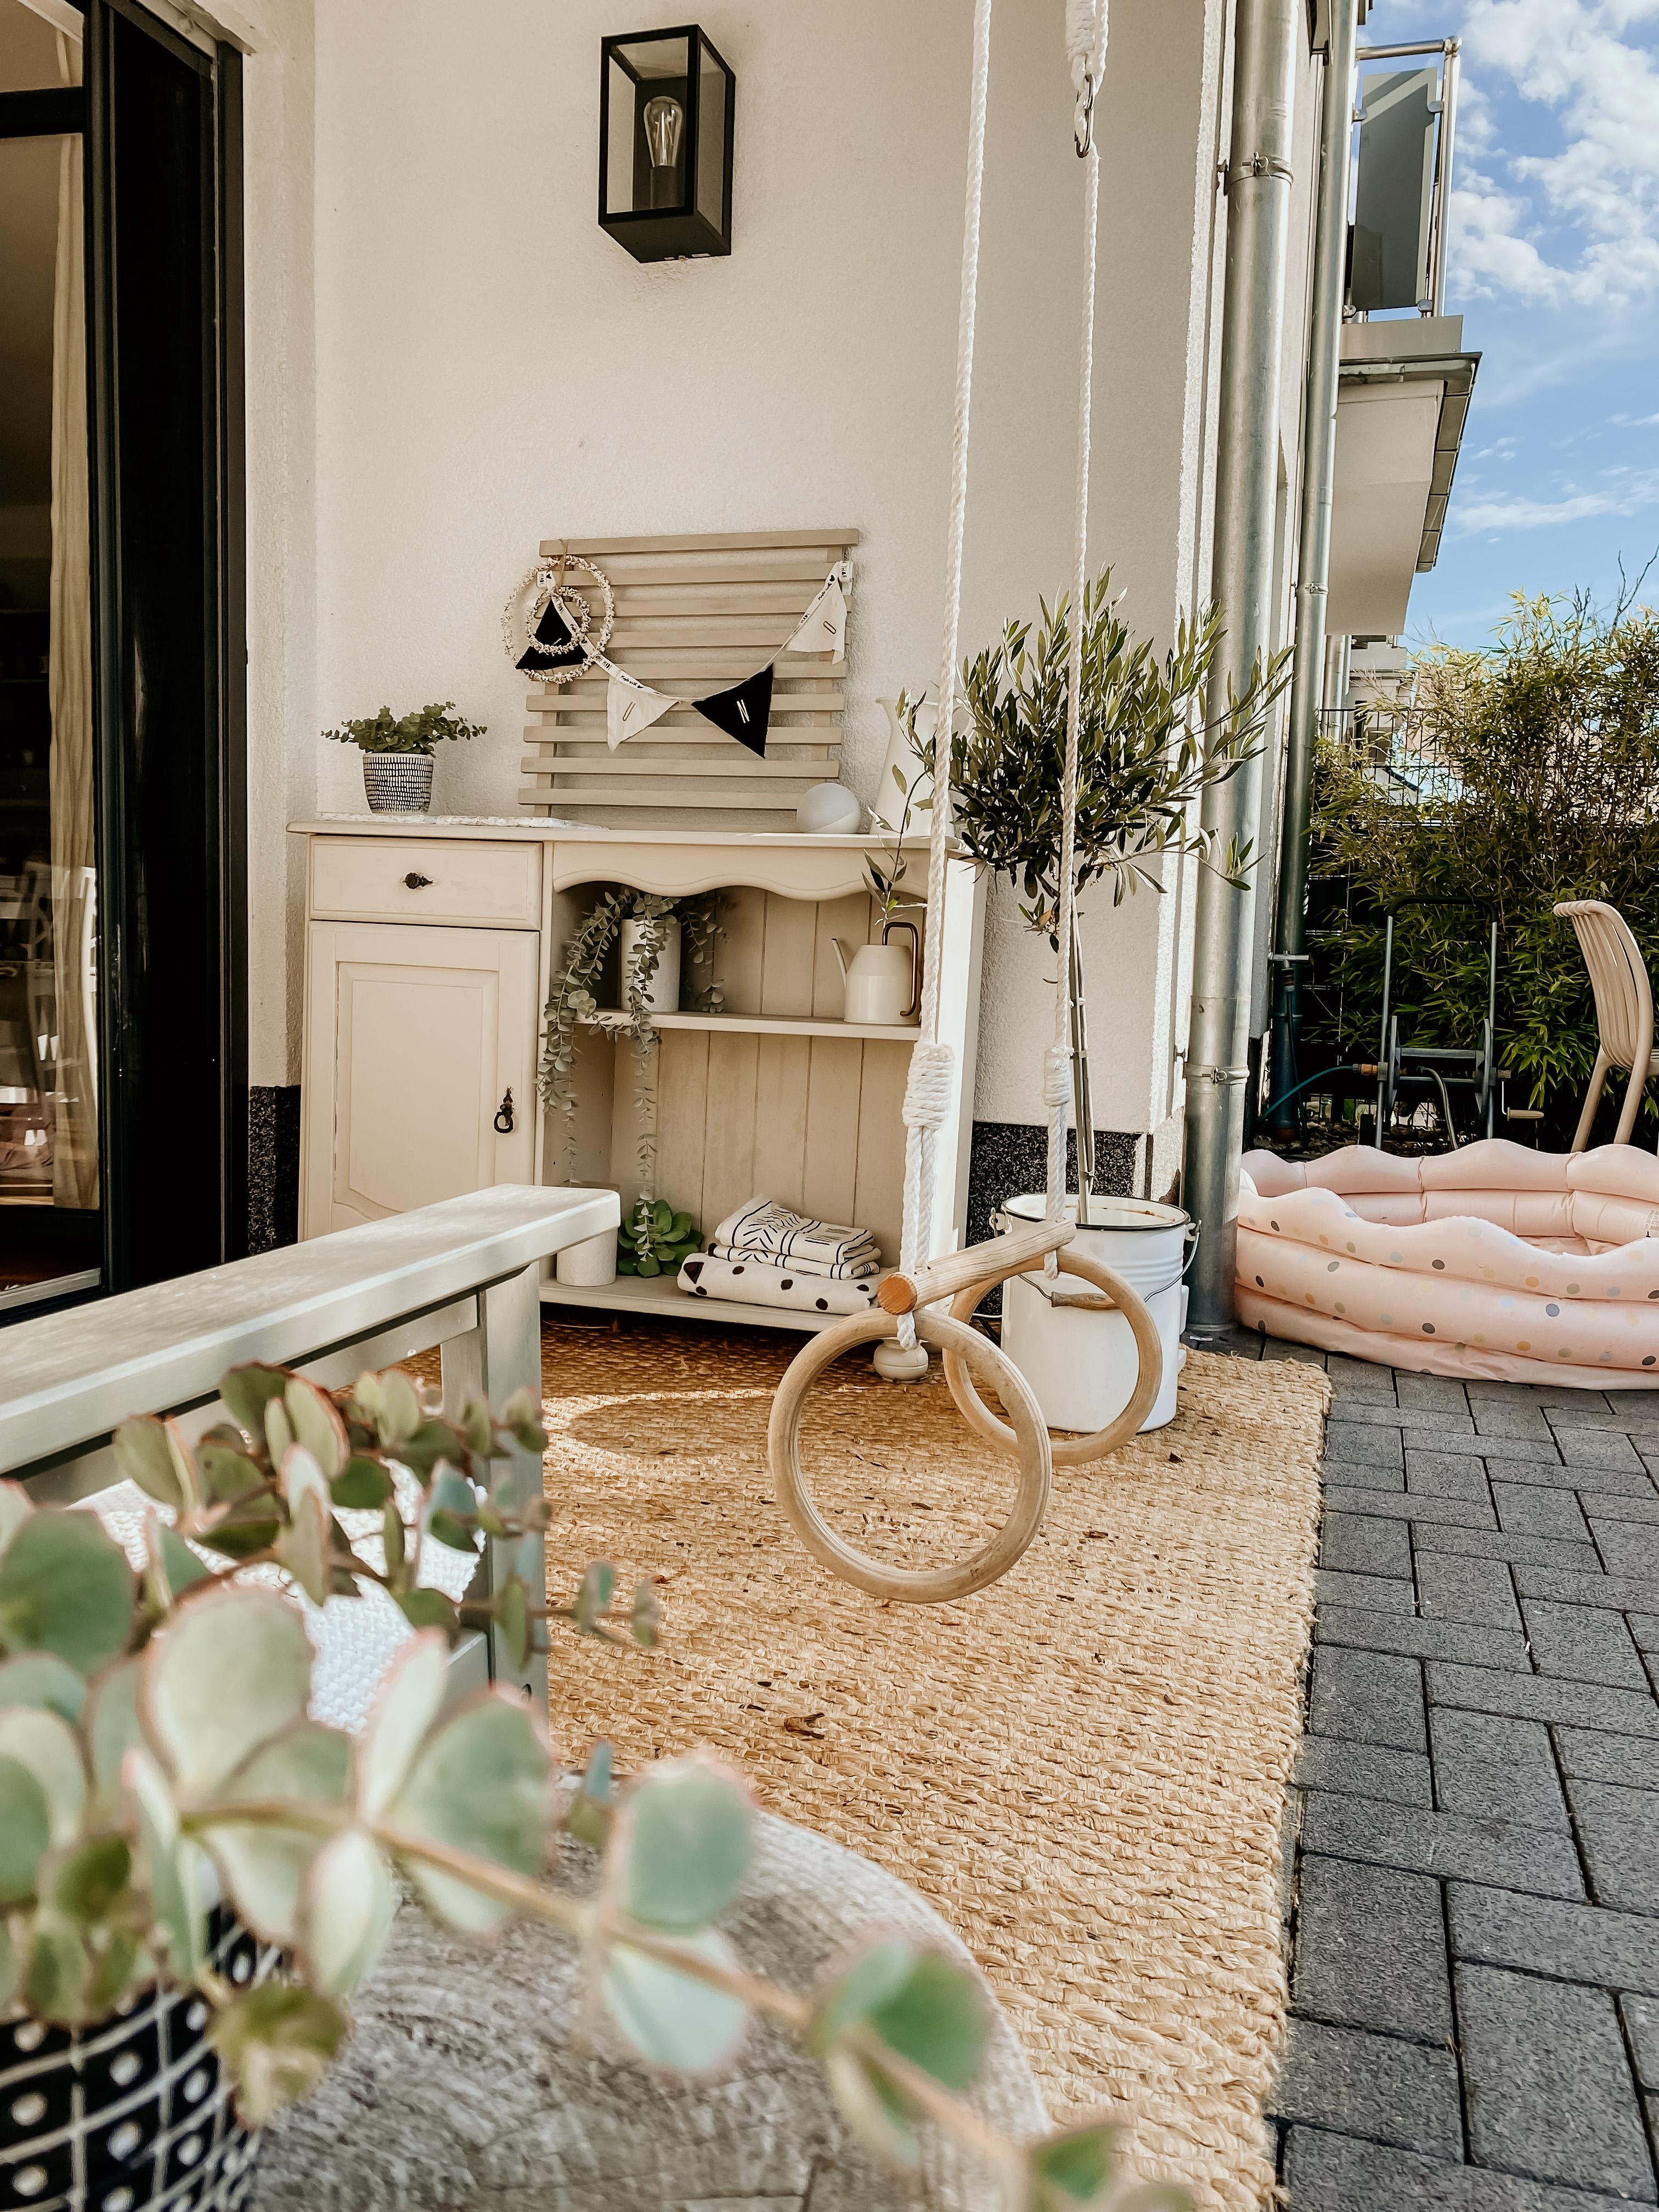 ein kleiner Garten mit vielen Spiel- und Deko möglichkeiten #reihenhaus #terrasse #boho #schaukel #upcycle #kreidefarbe 